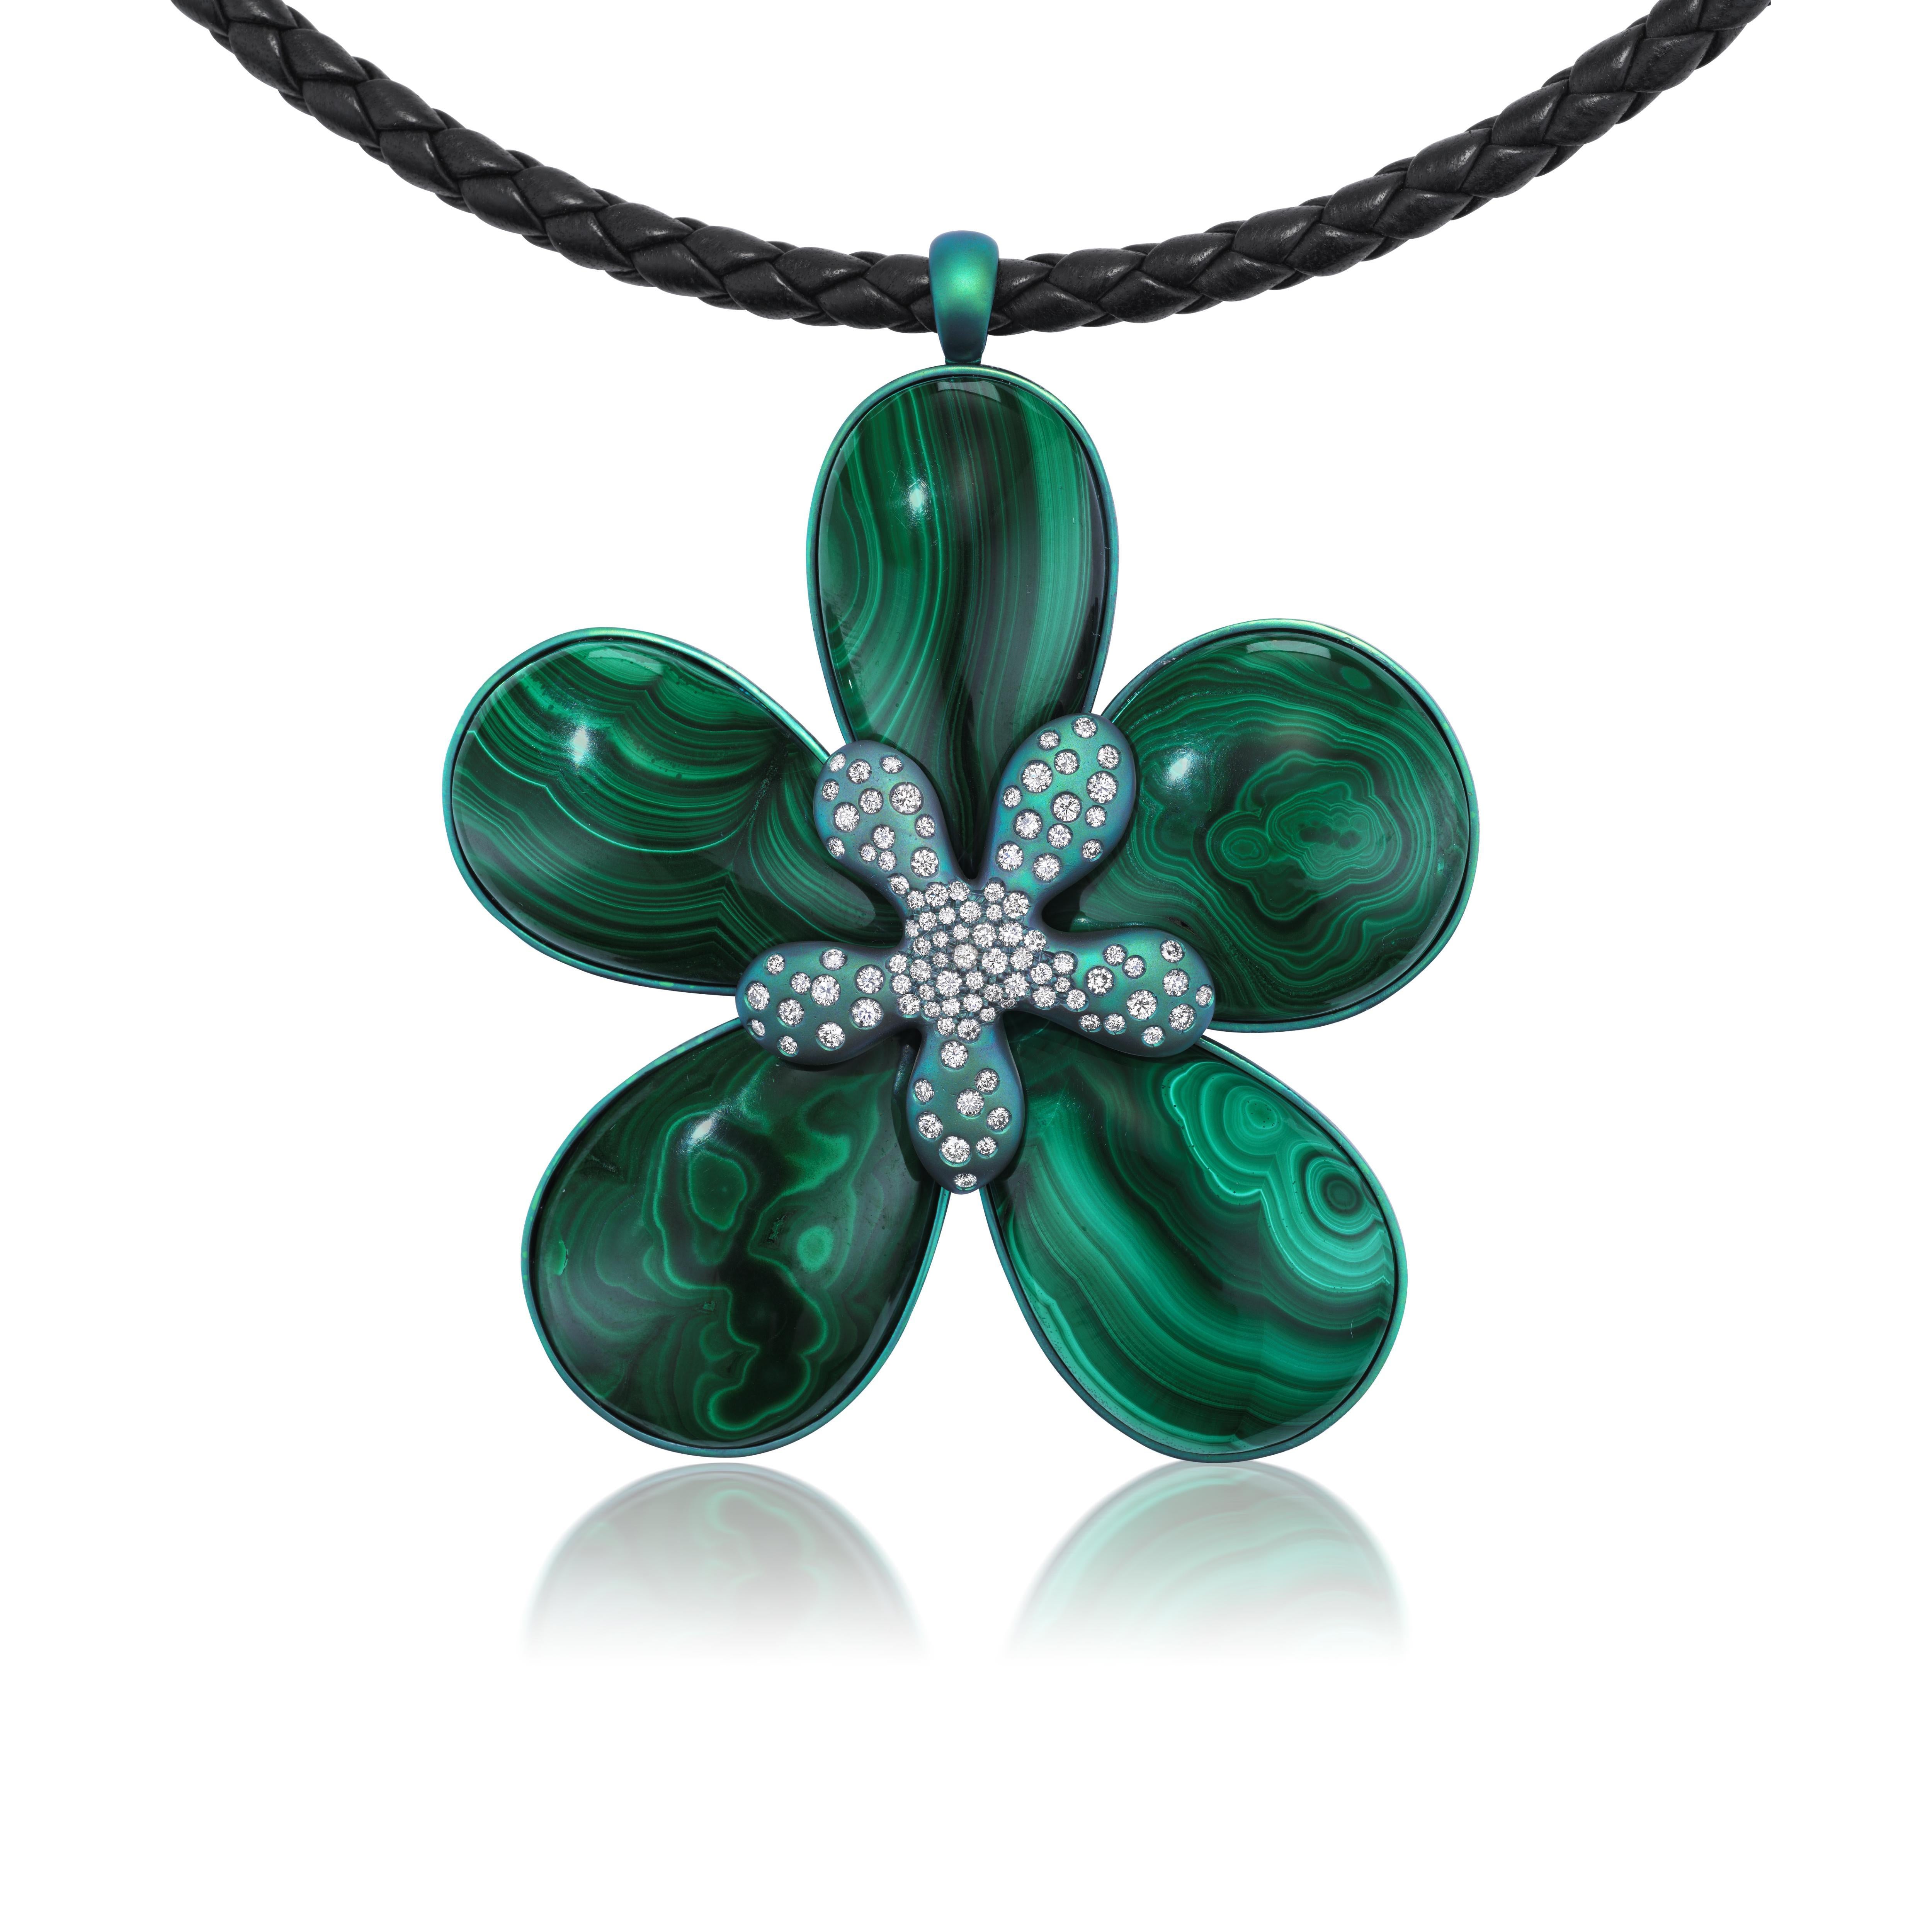 Ce collier unique en son genre présente une combinaison étonnante de malachite et de diamants sertis dans du titane vert anodisé. Chaque élément de cette pièce exquise s'harmonise pour créer un chef-d'œuvre visuel captivant qui ne manquera pas de